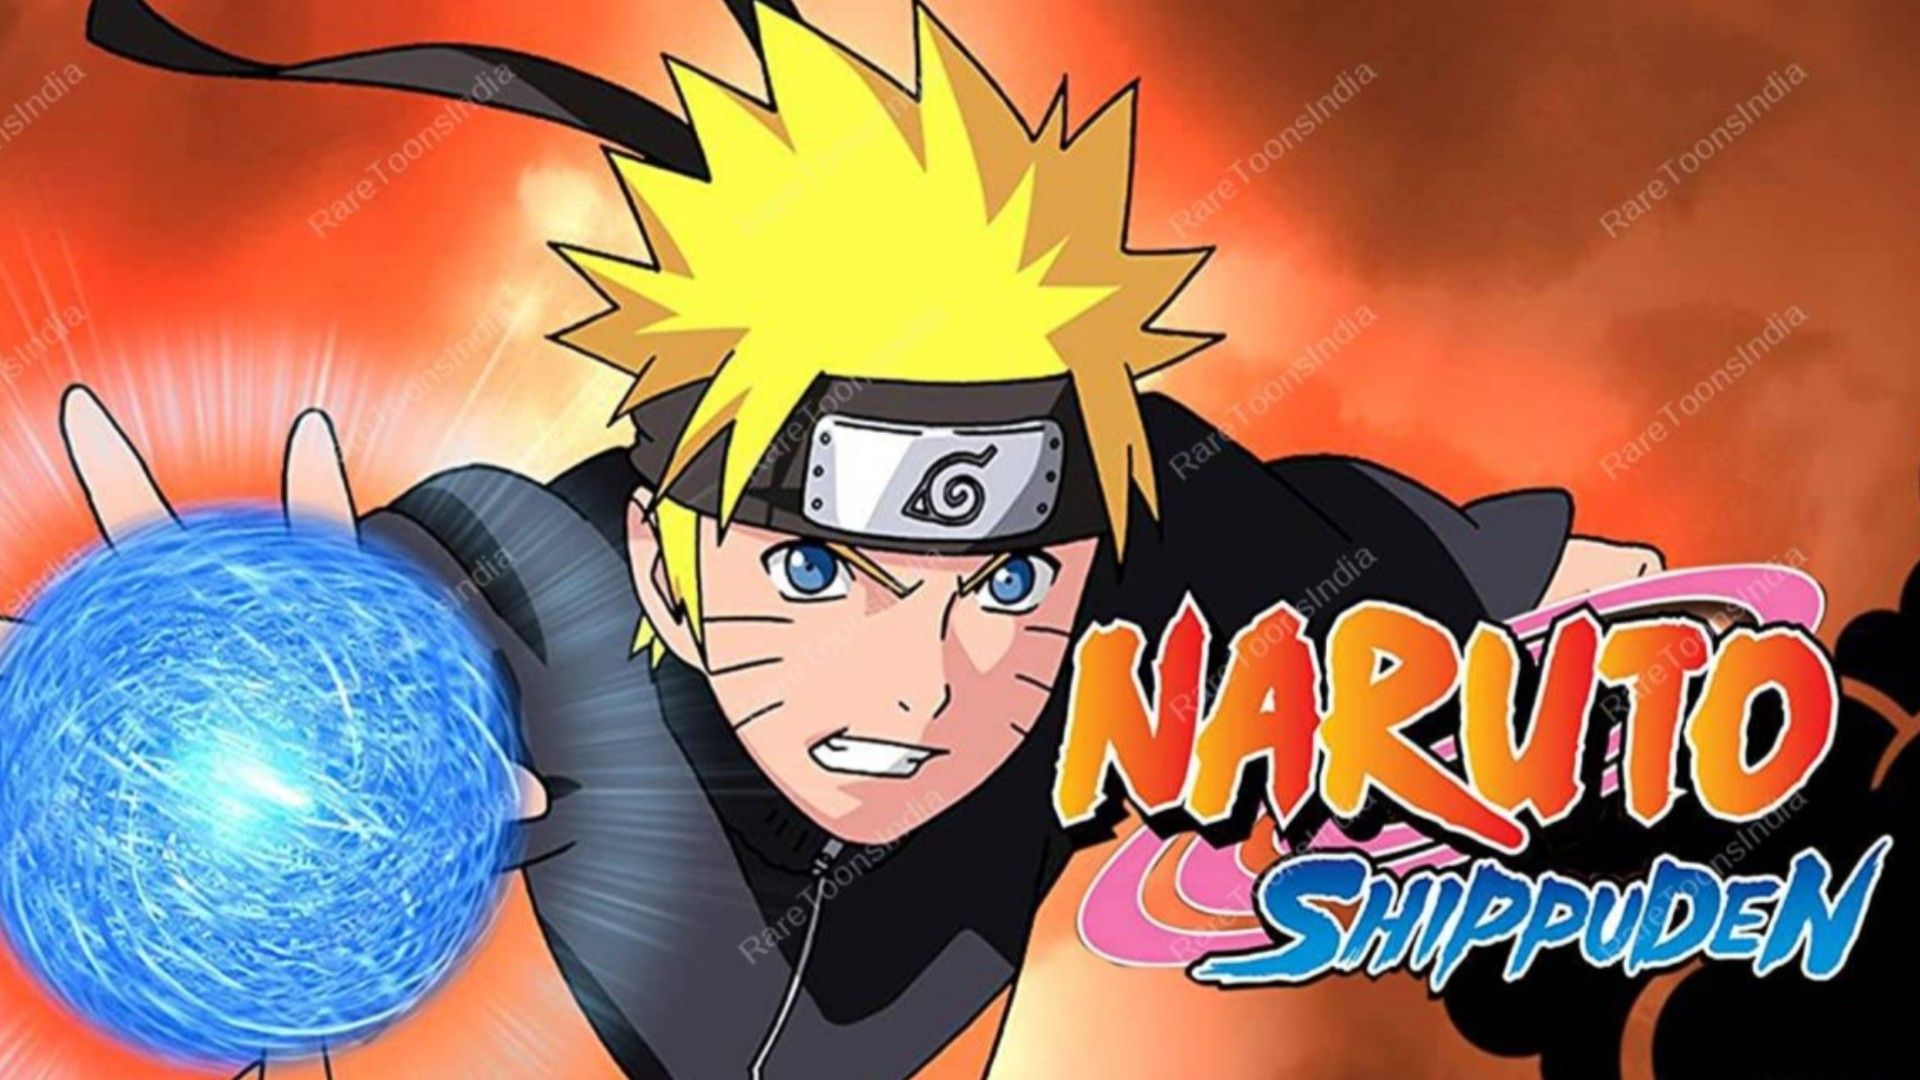 Naruto: Shippuden May Soon Receive a Hindi Dub